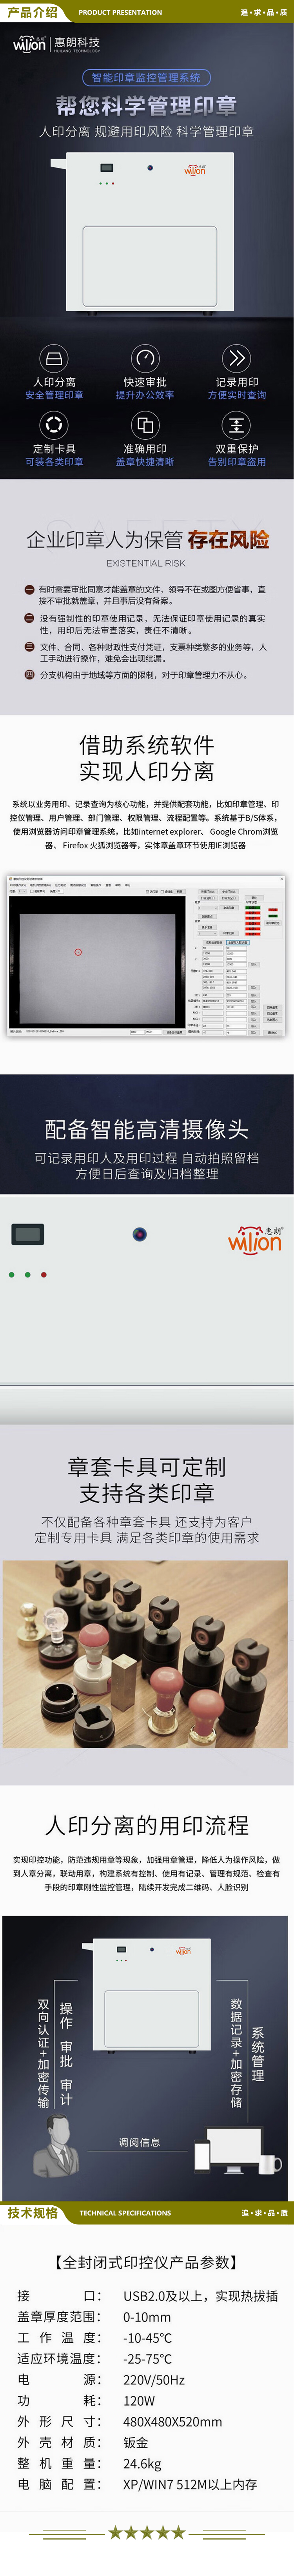 惠朗 huilang HL W350C 全封闭式智能印章监控仪 银行企业定制盖章机印控仪 2.jpg